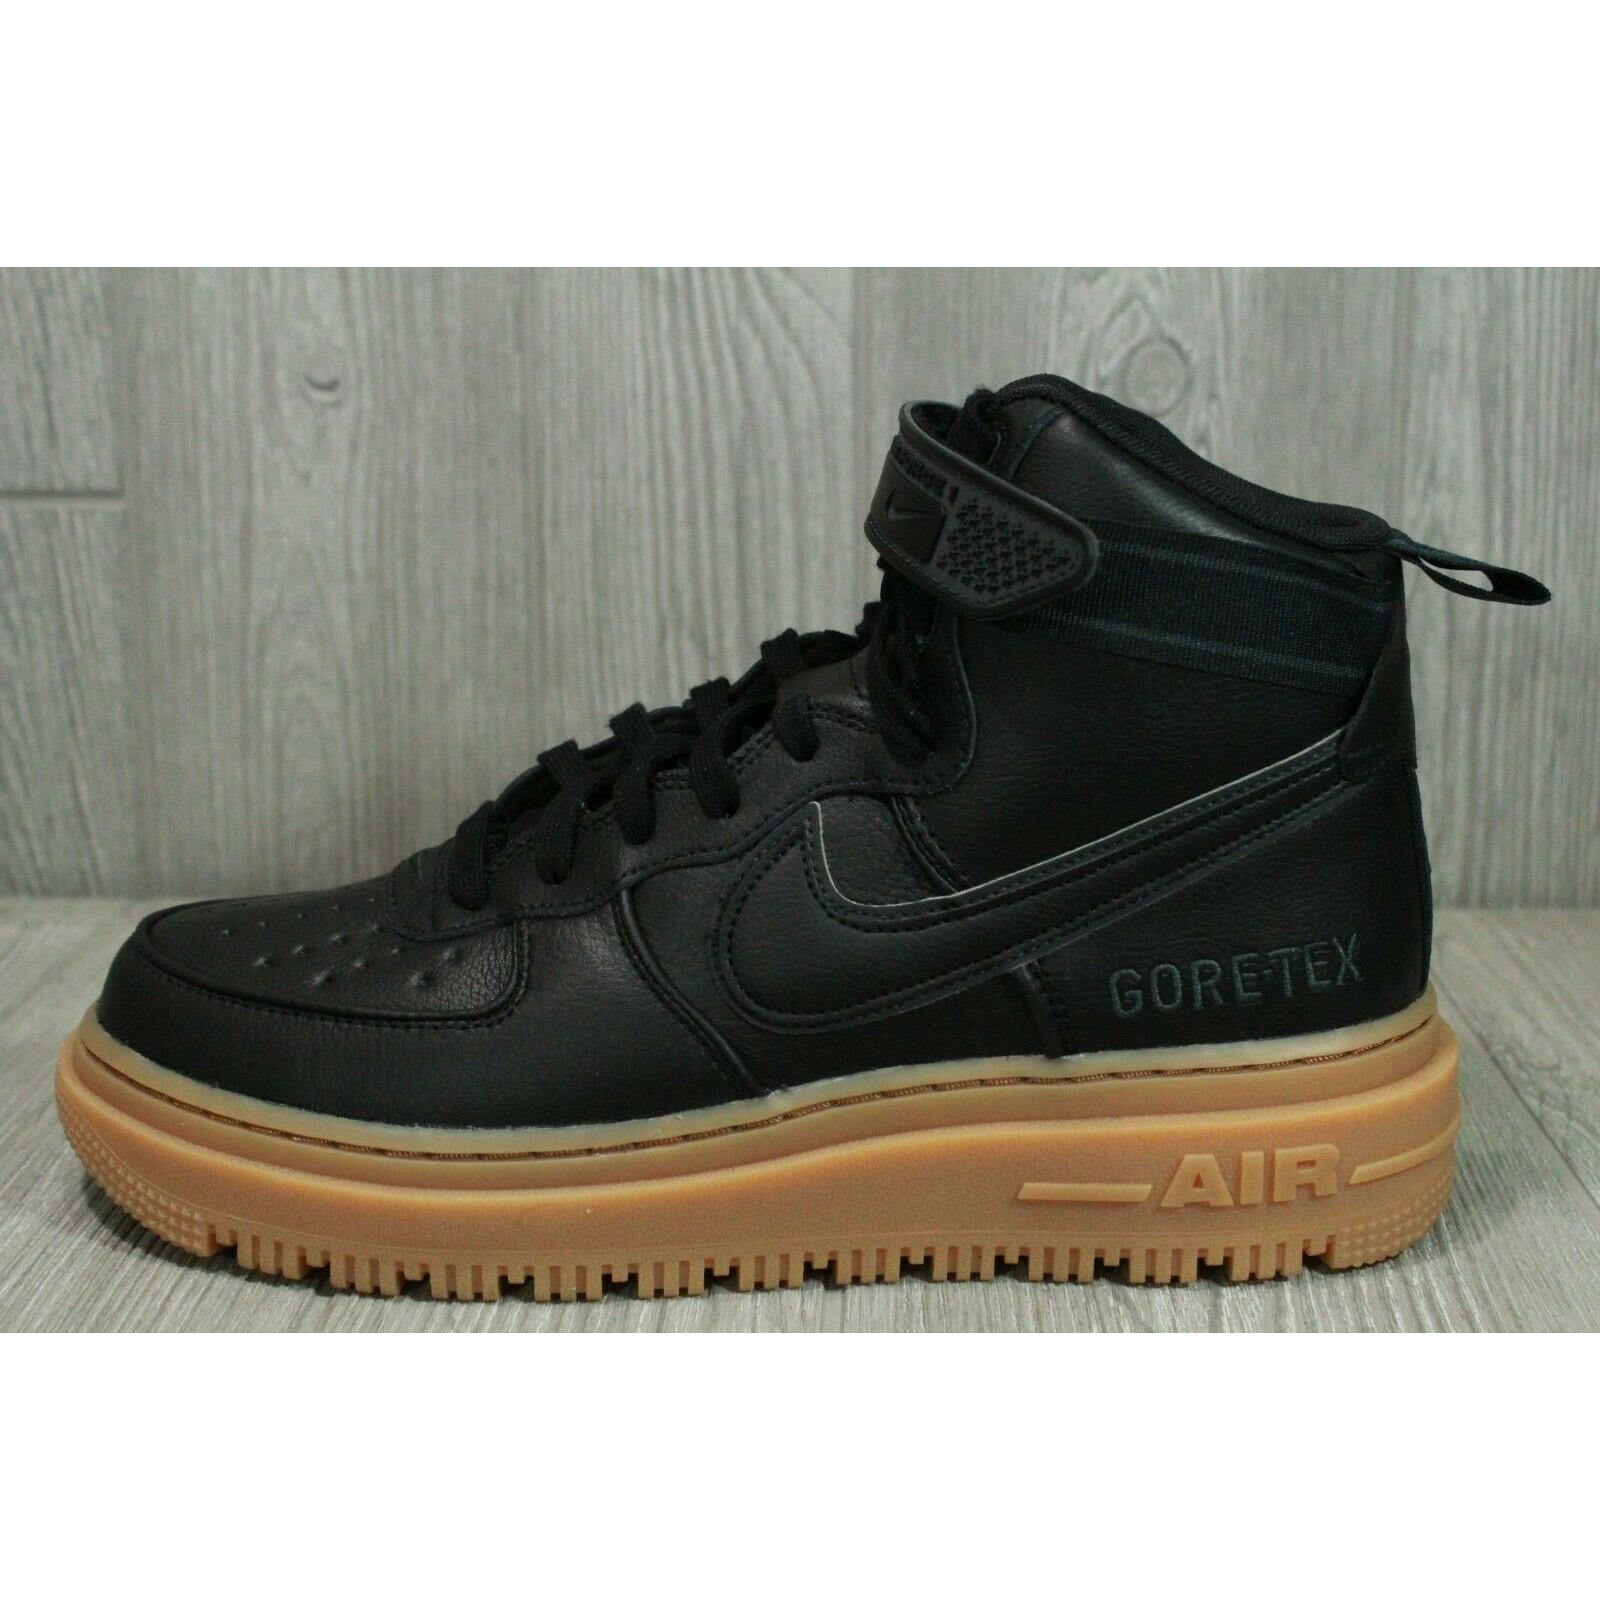 Nike Air Force 1 High Gtx Goretex Black Gum Boots Shoes CT2815-001 Mens 9.5